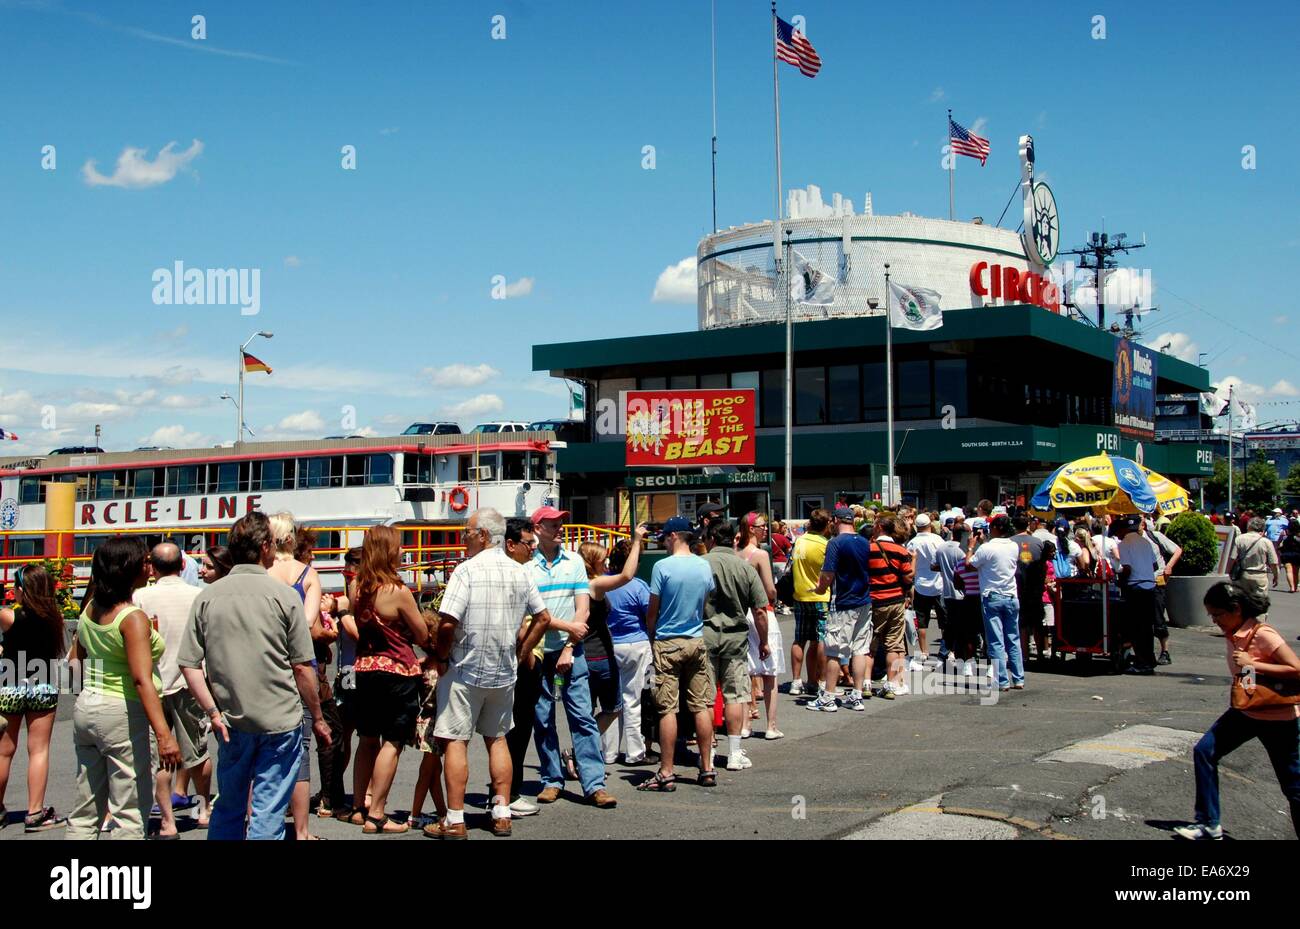 NYC : foules queue pour acheter des billets pour des excursions en bateau autour de l'île de Manhattan à la ligne Circle jetée sur la 43e Rue Ouest Banque D'Images